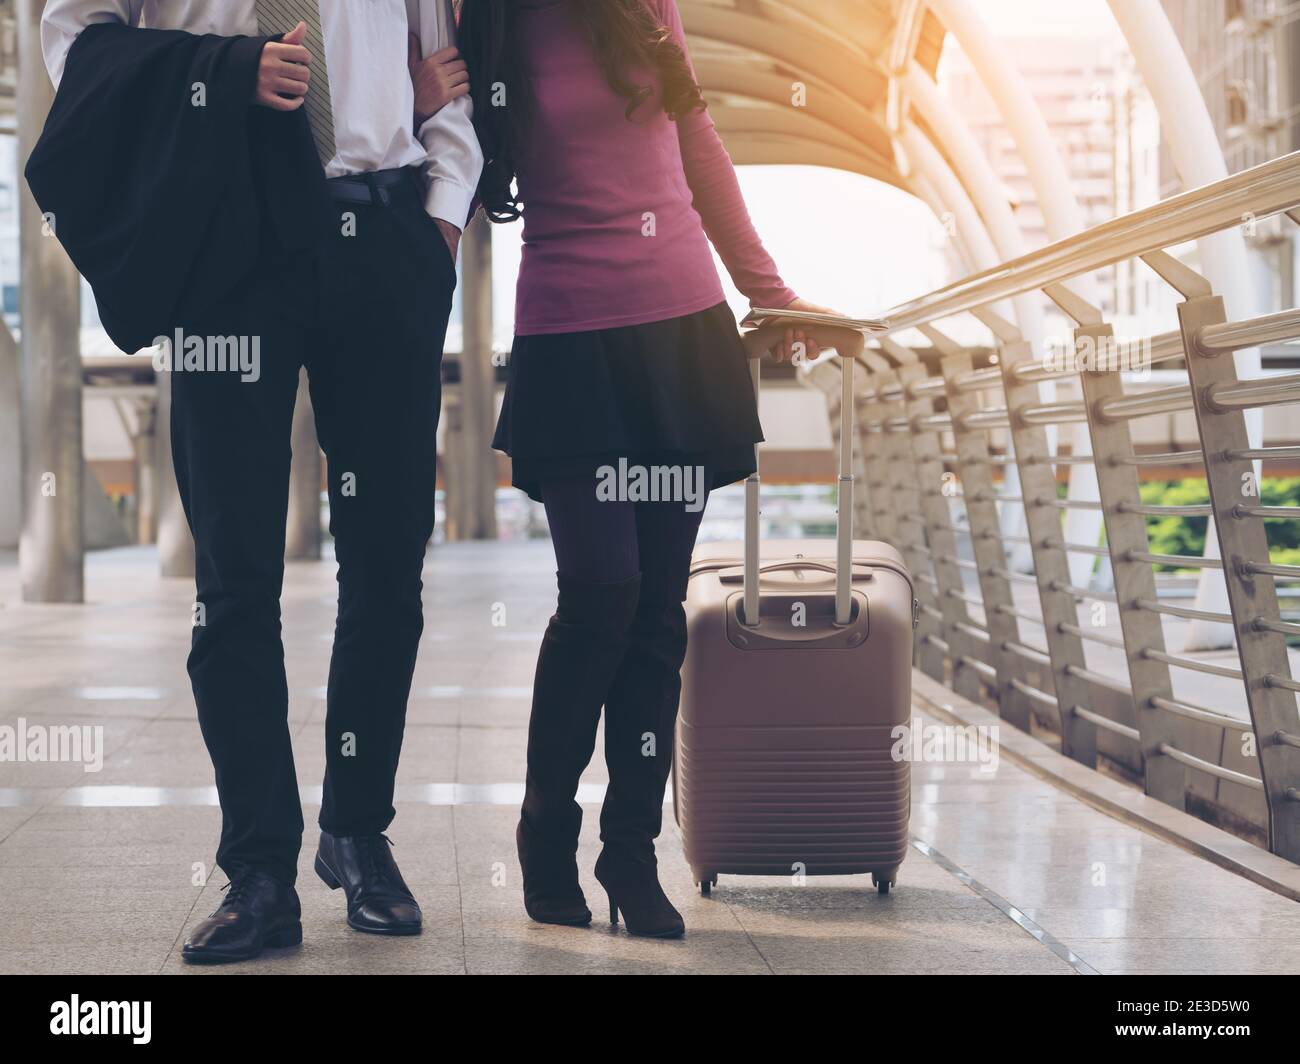 Couple voyageurs marchant dans le passage du terminal de l'aéroport avec sac de voyage ou bagages pour voyage de lune de miel à l'étranger. Concept de voyage en couple. Banque D'Images